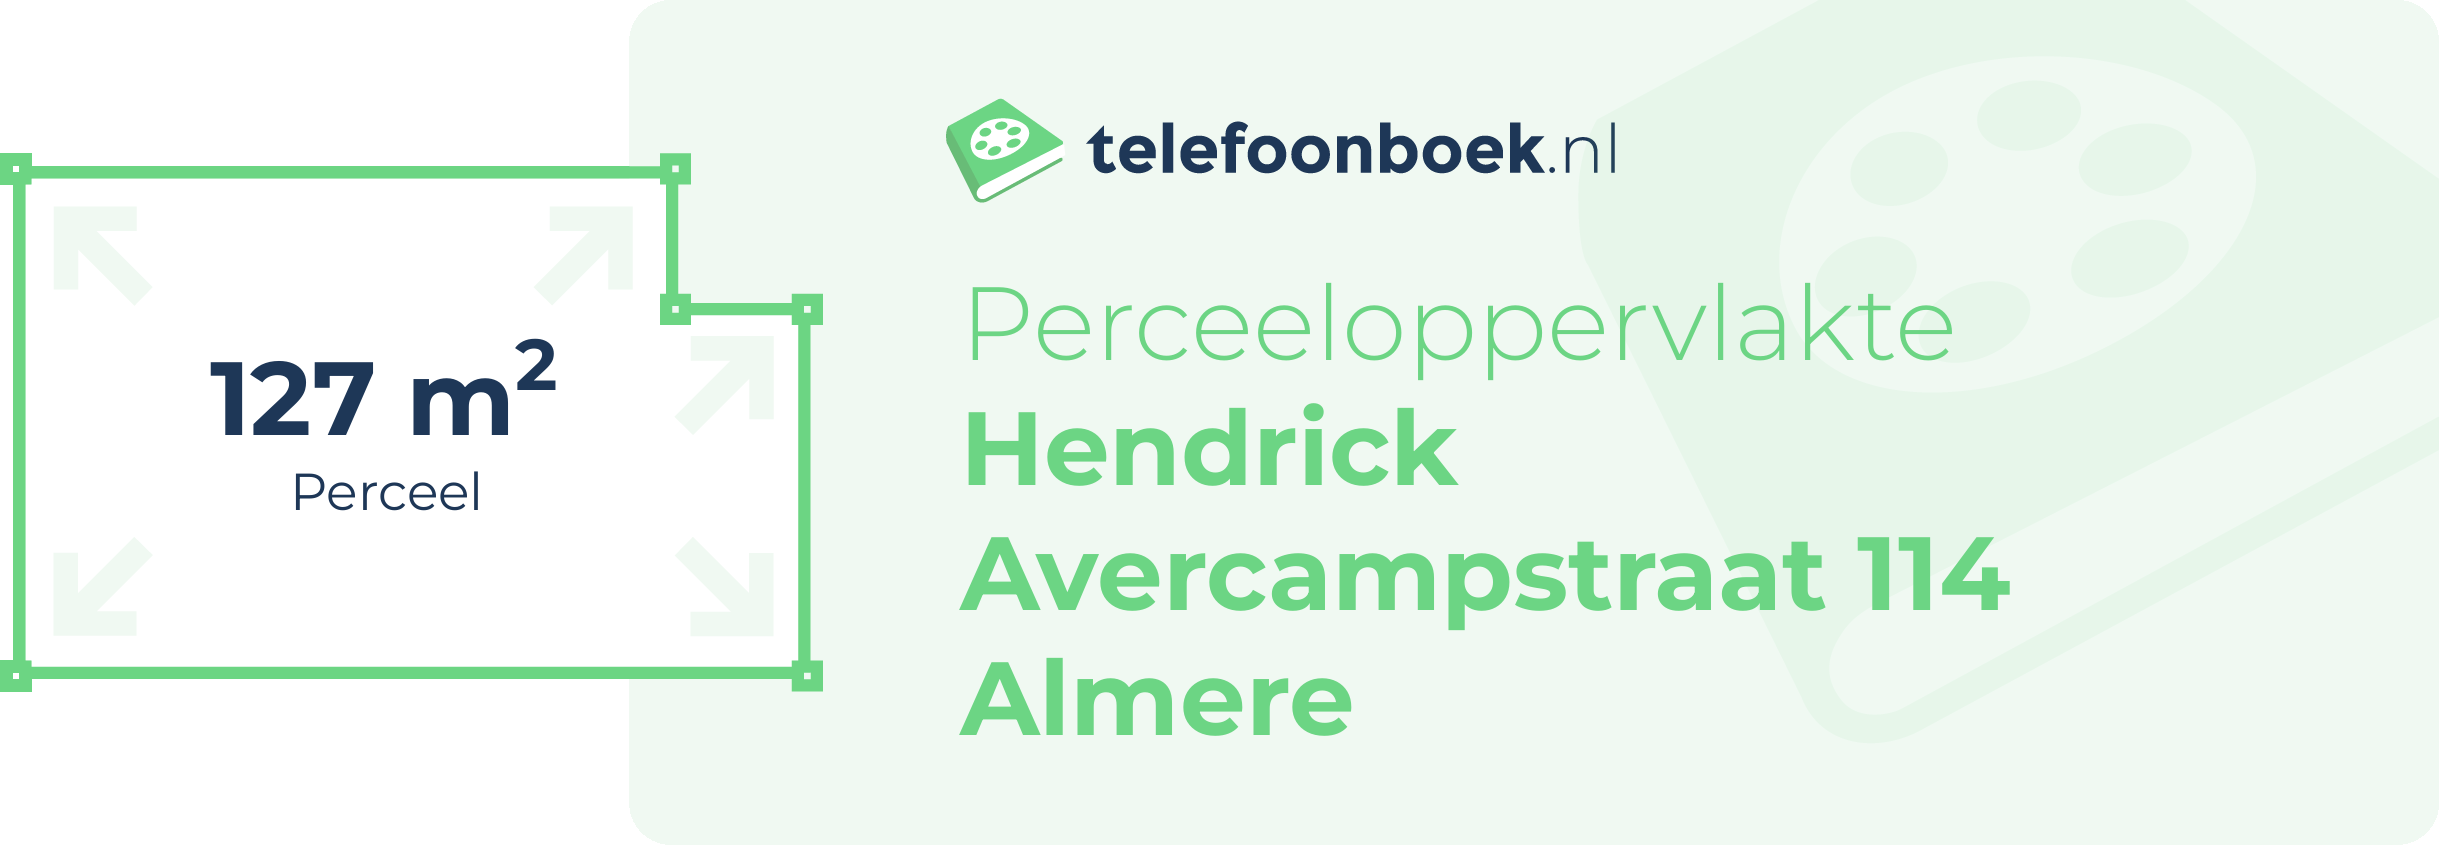 Perceeloppervlakte Hendrick Avercampstraat 114 Almere